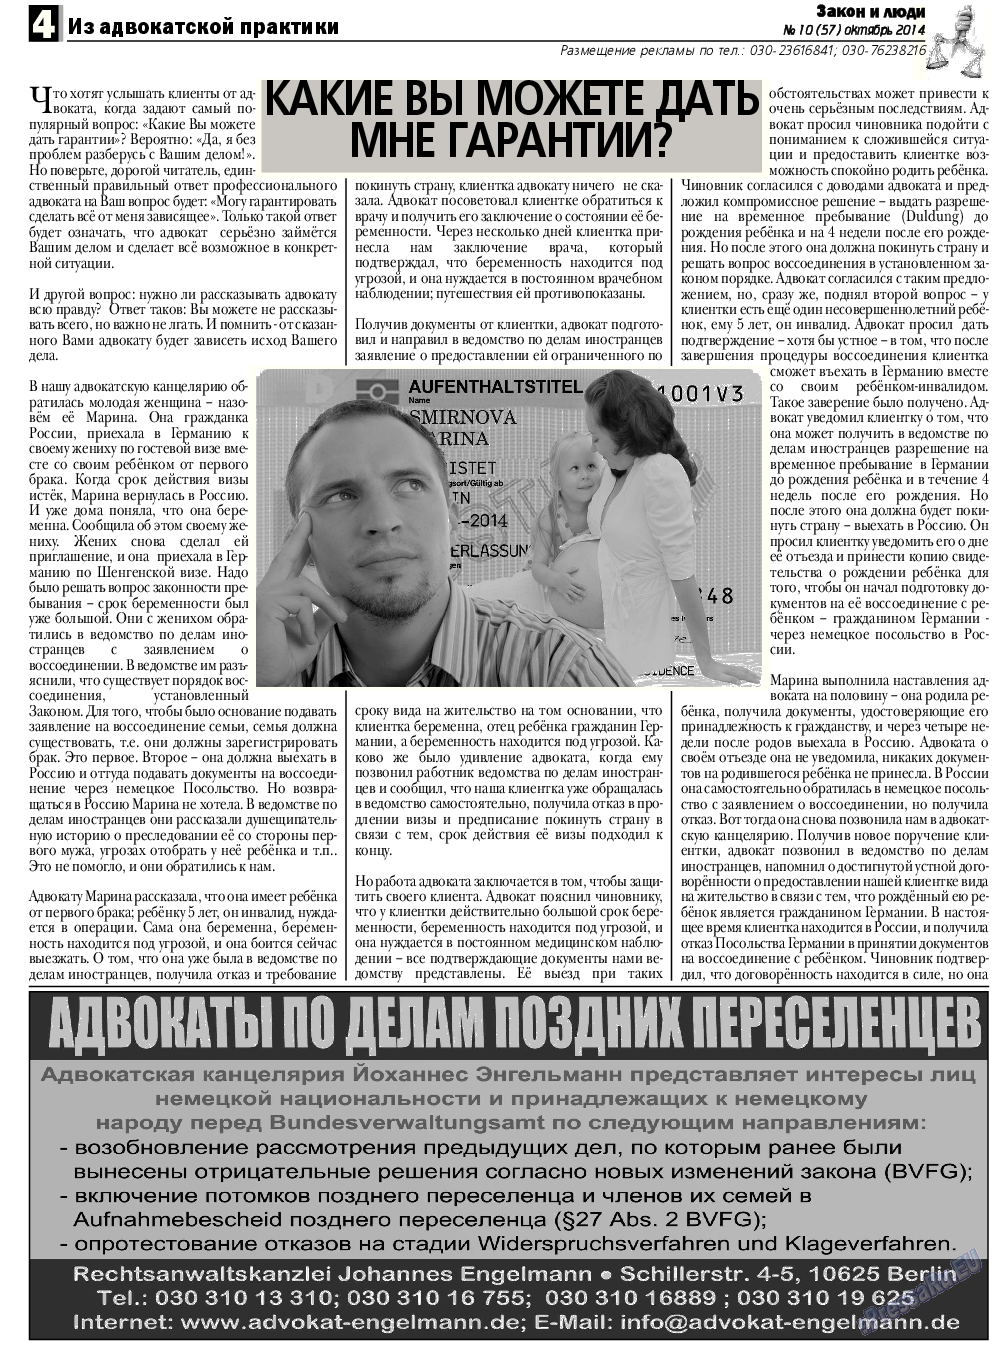 Закон и люди, газета. 2014 №10 стр.4